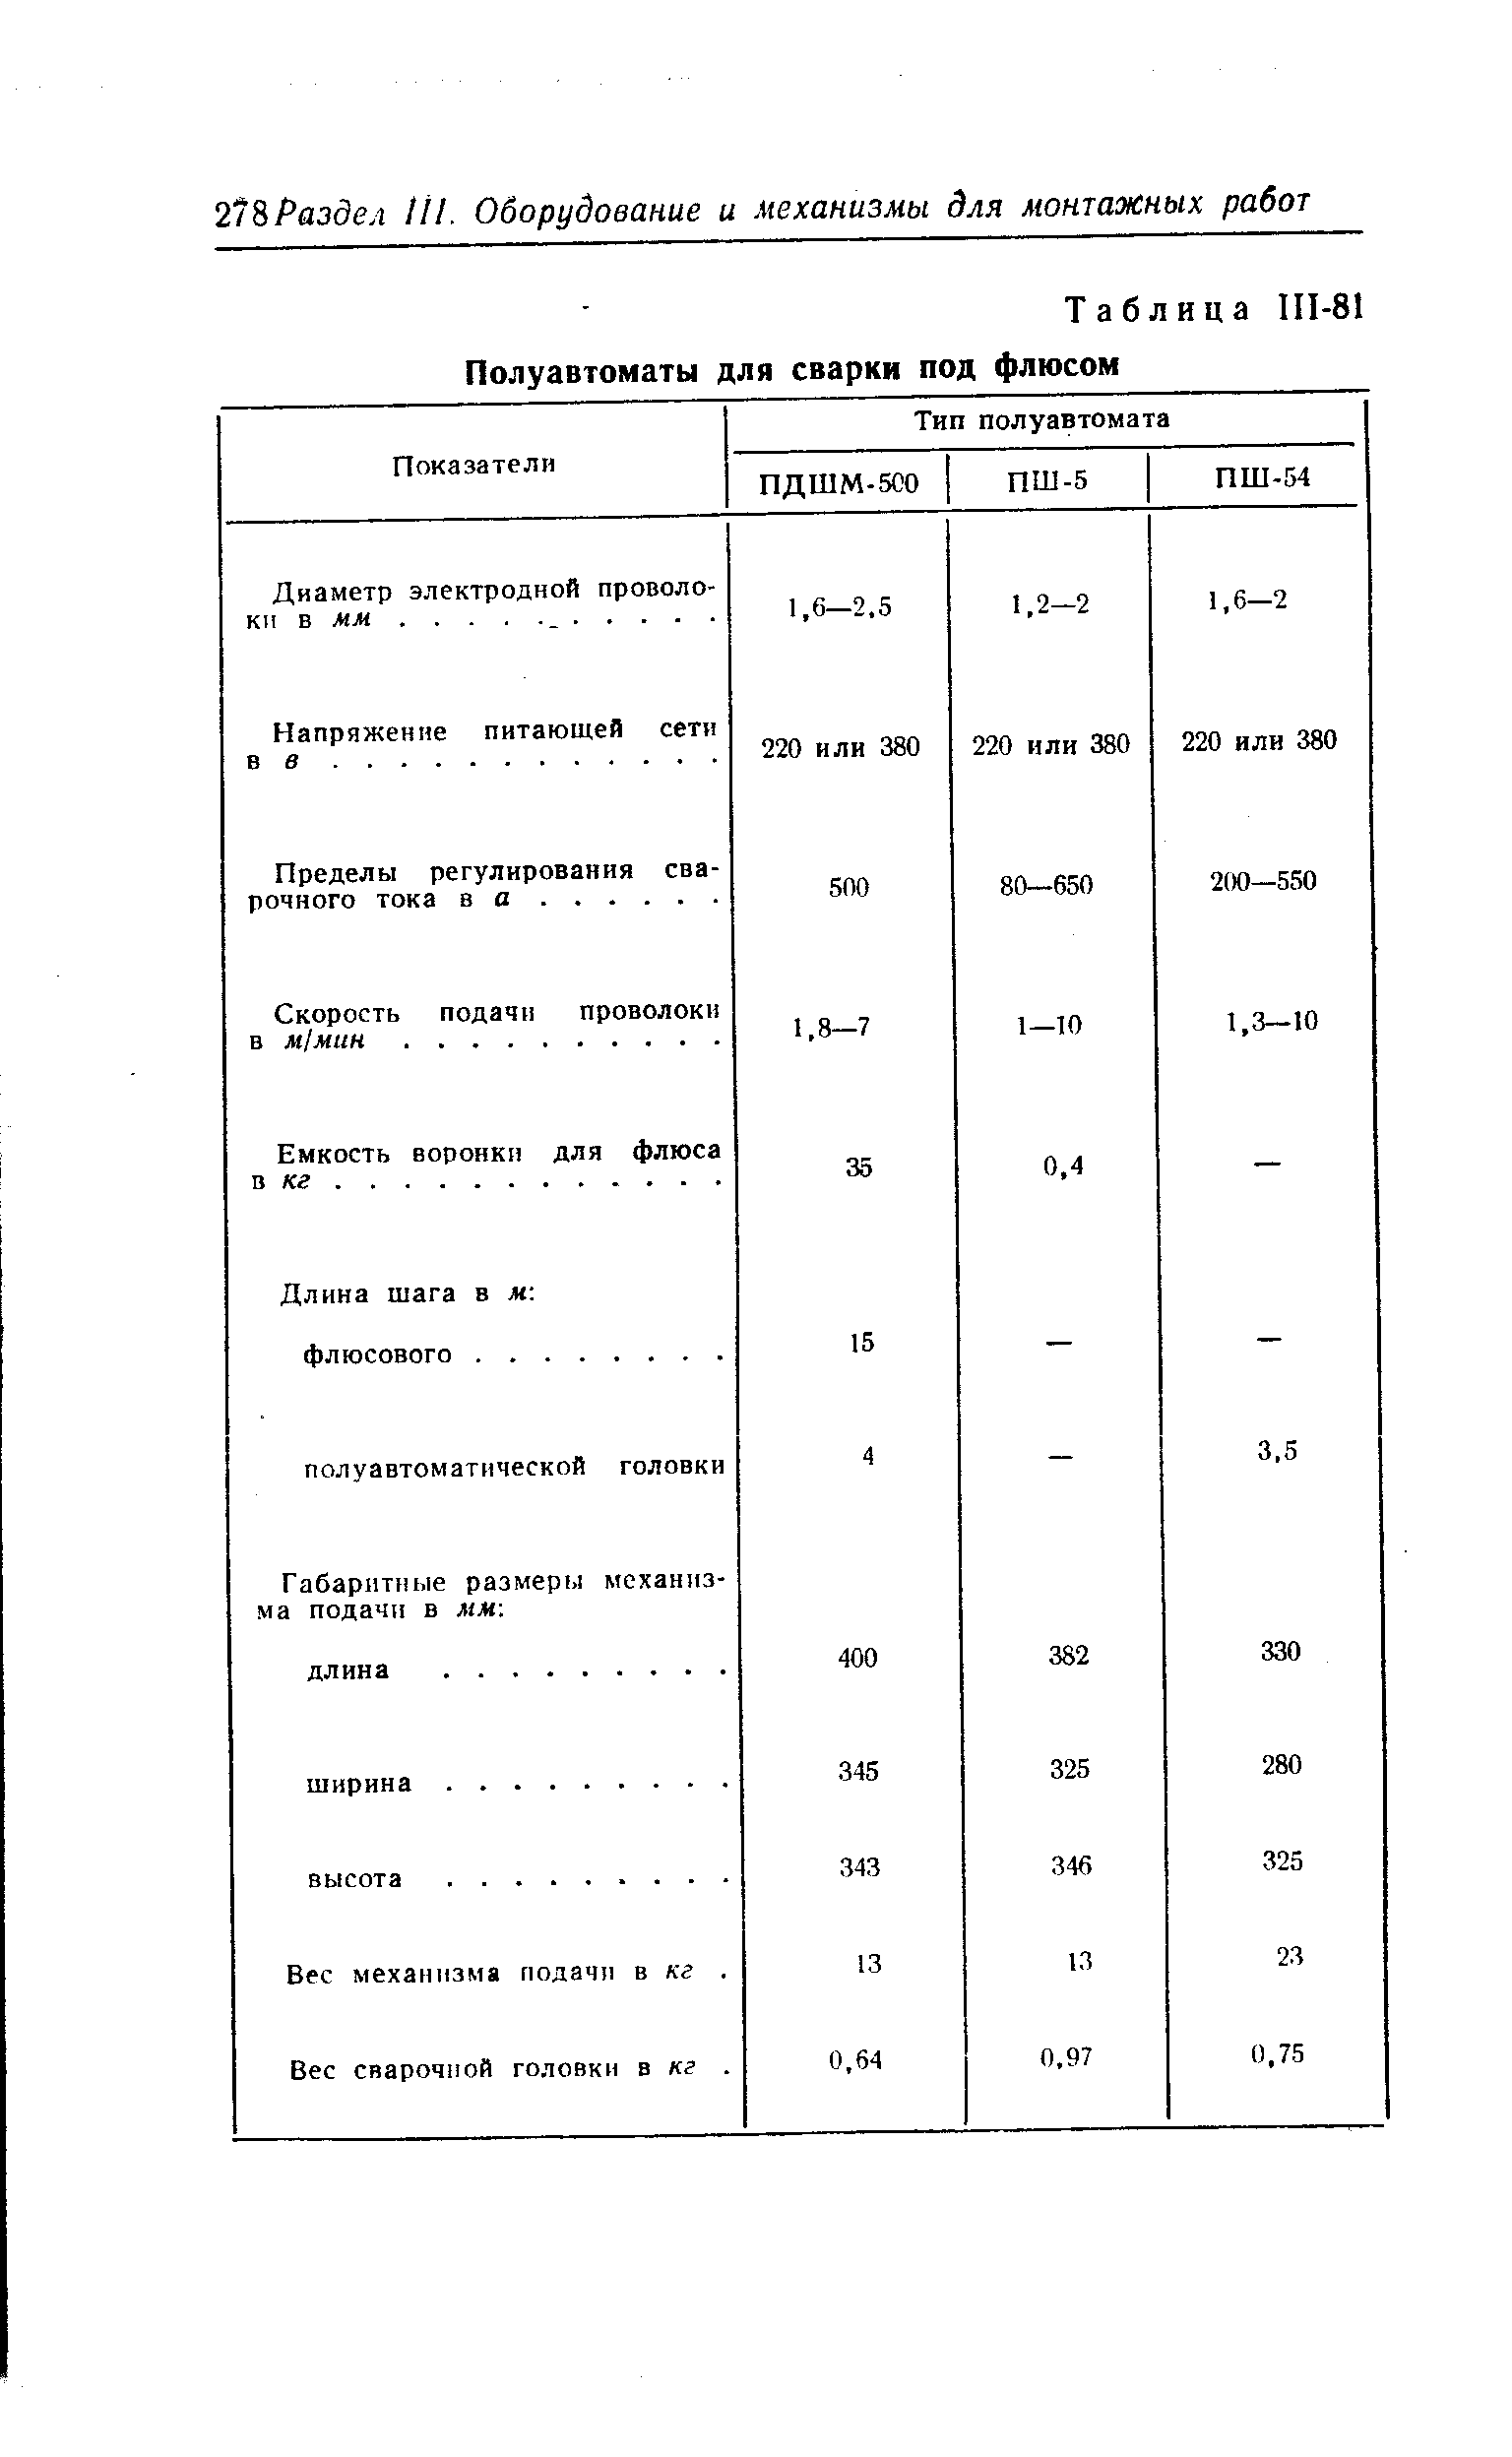 Таблица 111-81 Полуавтоматы для сварки под флюсом
